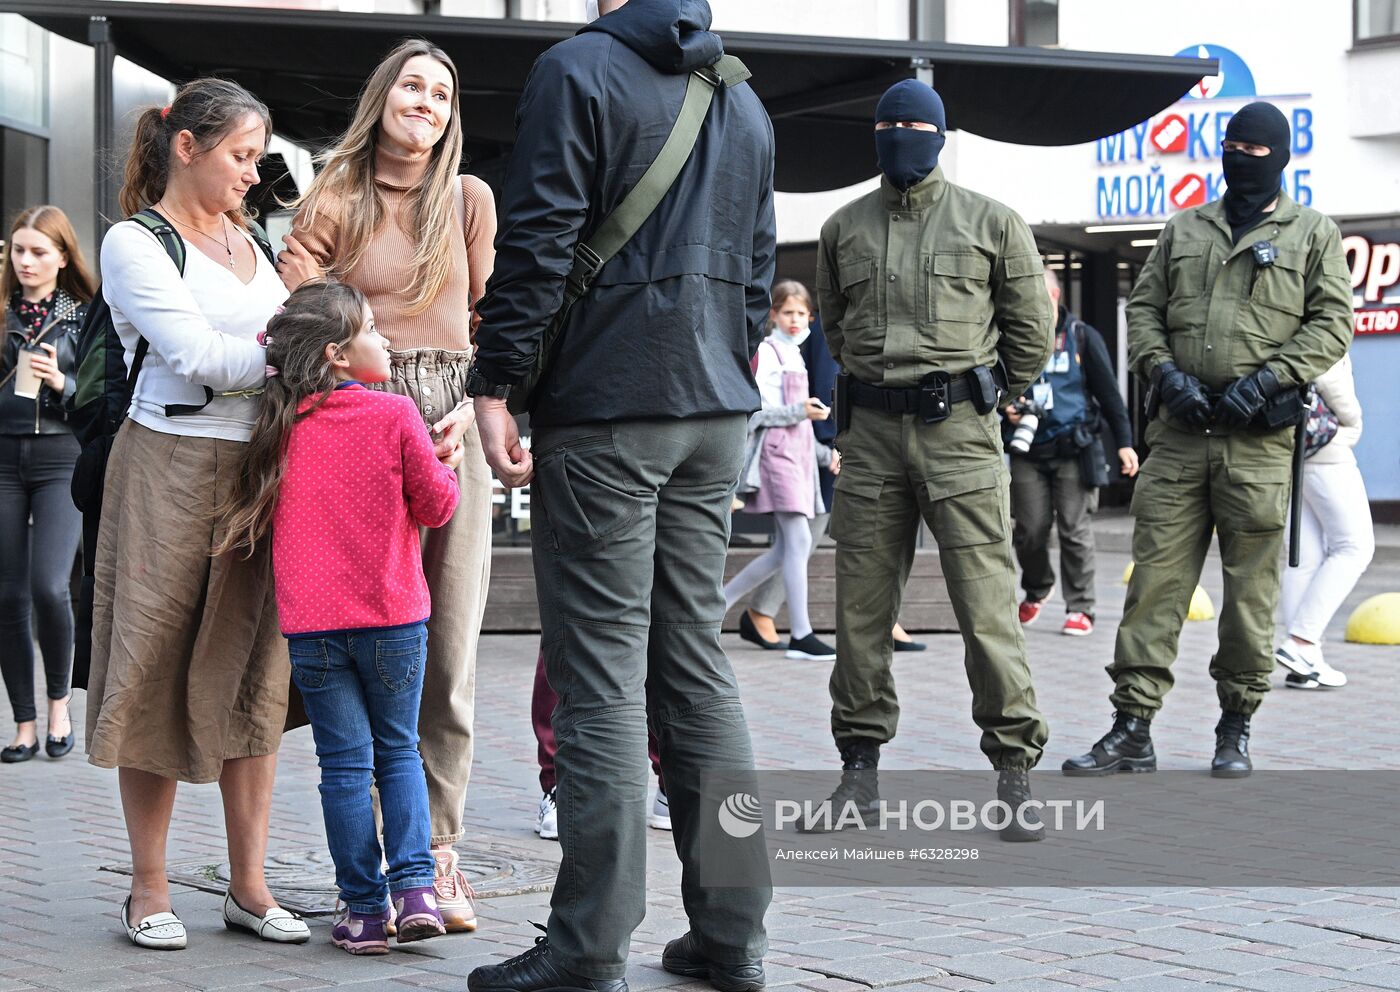 Ситуация в Минске